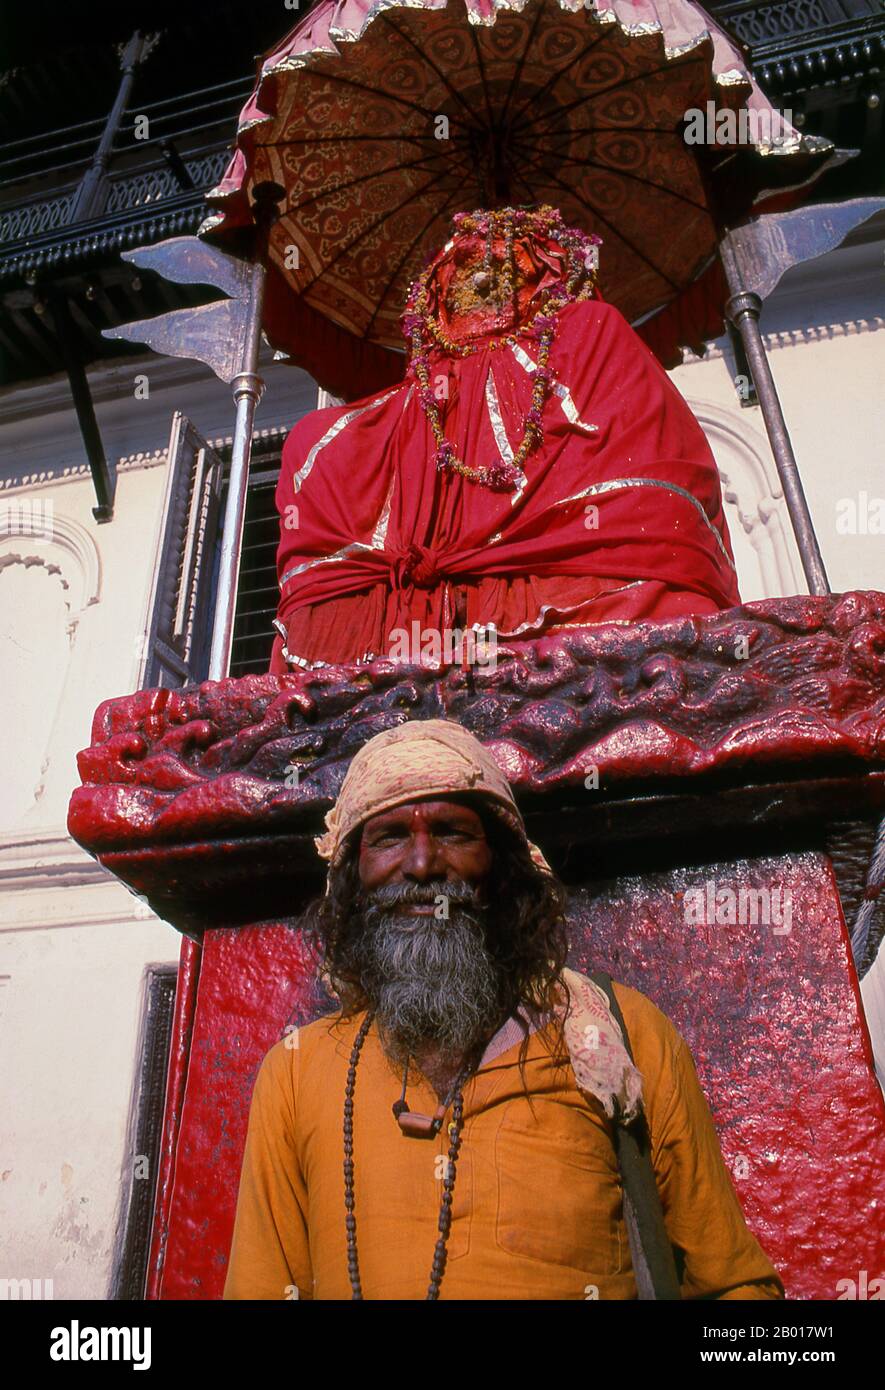 Nepal: Sadhu frente a la estatua de Hanuman en Hanuman Dhoka Durbar (Palacio Real de Hanuman), Katmandú. Son conocidos, variamente, como sadhus (santos, o 'buenos'), yoguis (practicantes ascéticos), Fakirs (buscador ascético después de la Verdad) y sannyasins (mendicantes errantes y ascetas). Son los practicantes ascéticos – y a menudo excéntricos – de una forma austera de Hinduismo. Algunos, jurados para desechar los deseos terrenales, eligen vivir como anclajes en el desierto. Otros tienen una disposición menos jubilada, especialmente en las ciudades y templos del valle de Katmandú en Nepal. Foto de stock